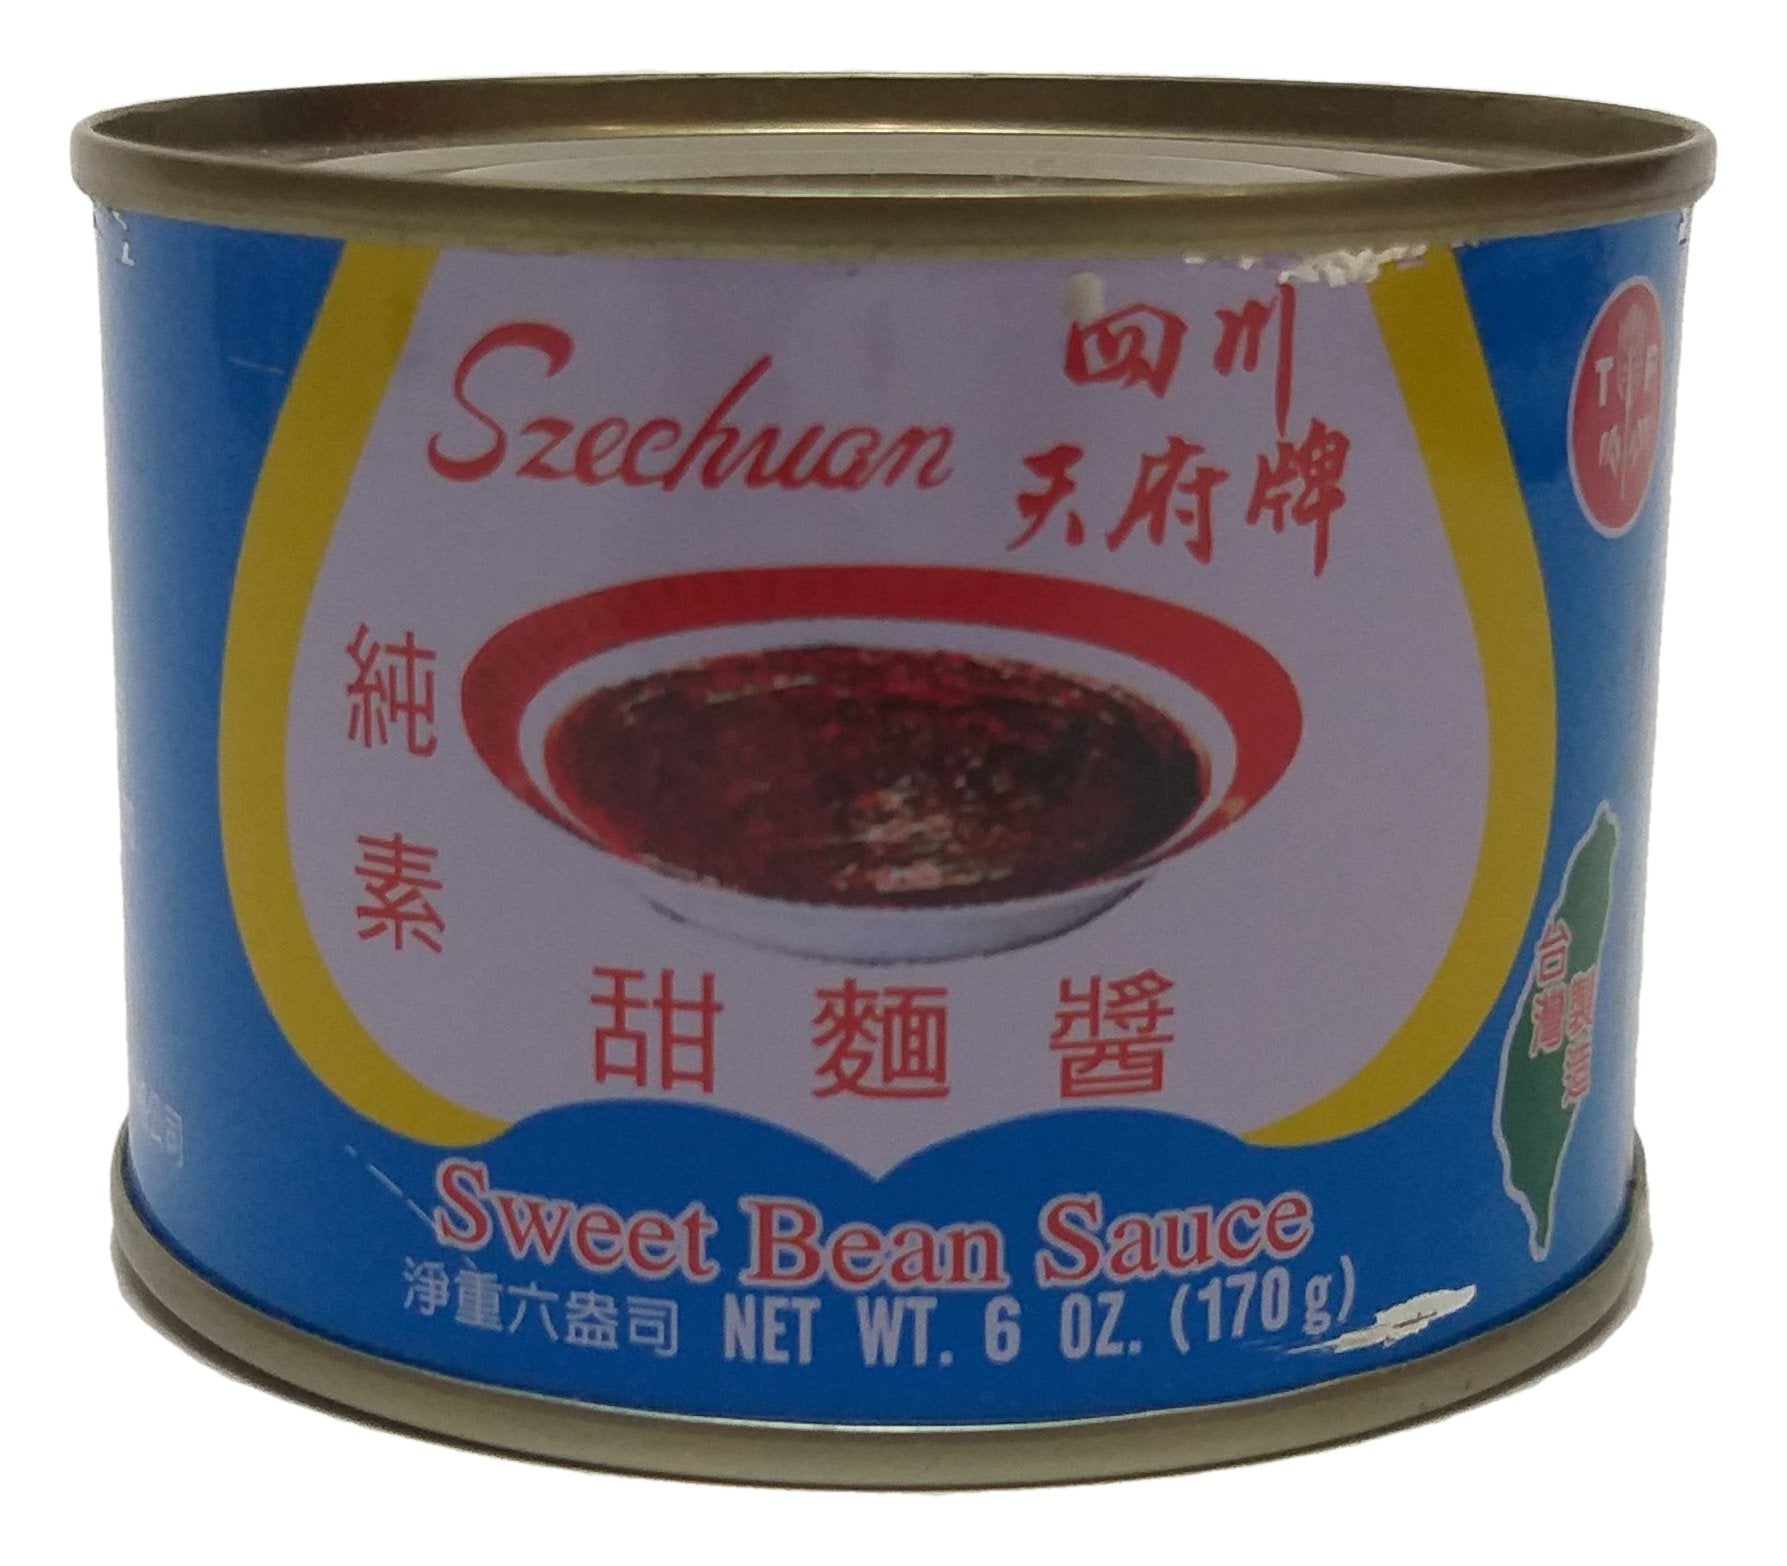 Szechuan Sweet Bean Sauce, 6 Ounces, 3 cans